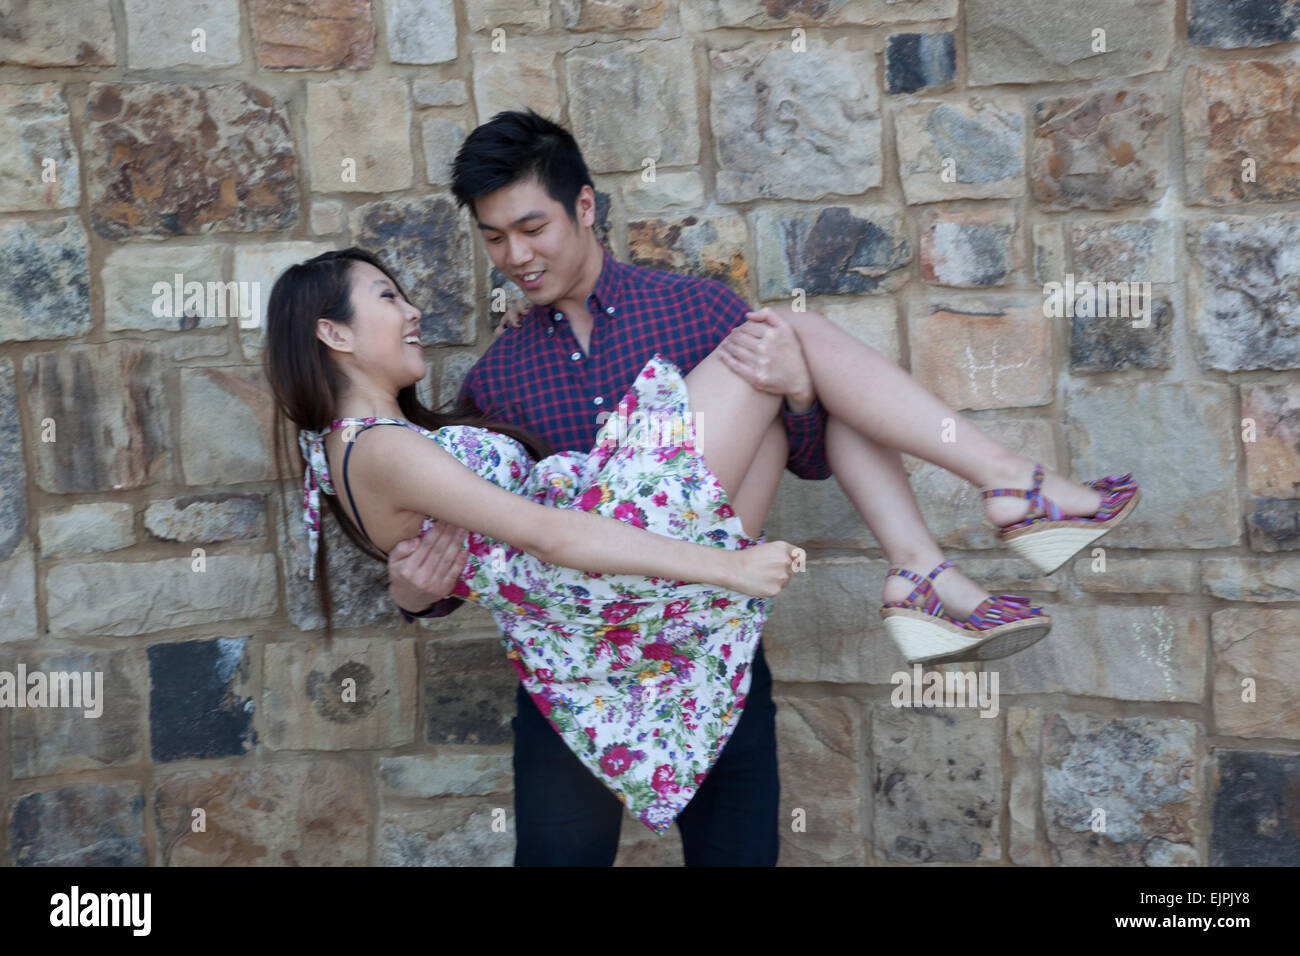 Asiatique romantique couple outdoors, femme et homme, il tient dans ses bras Banque D'Images